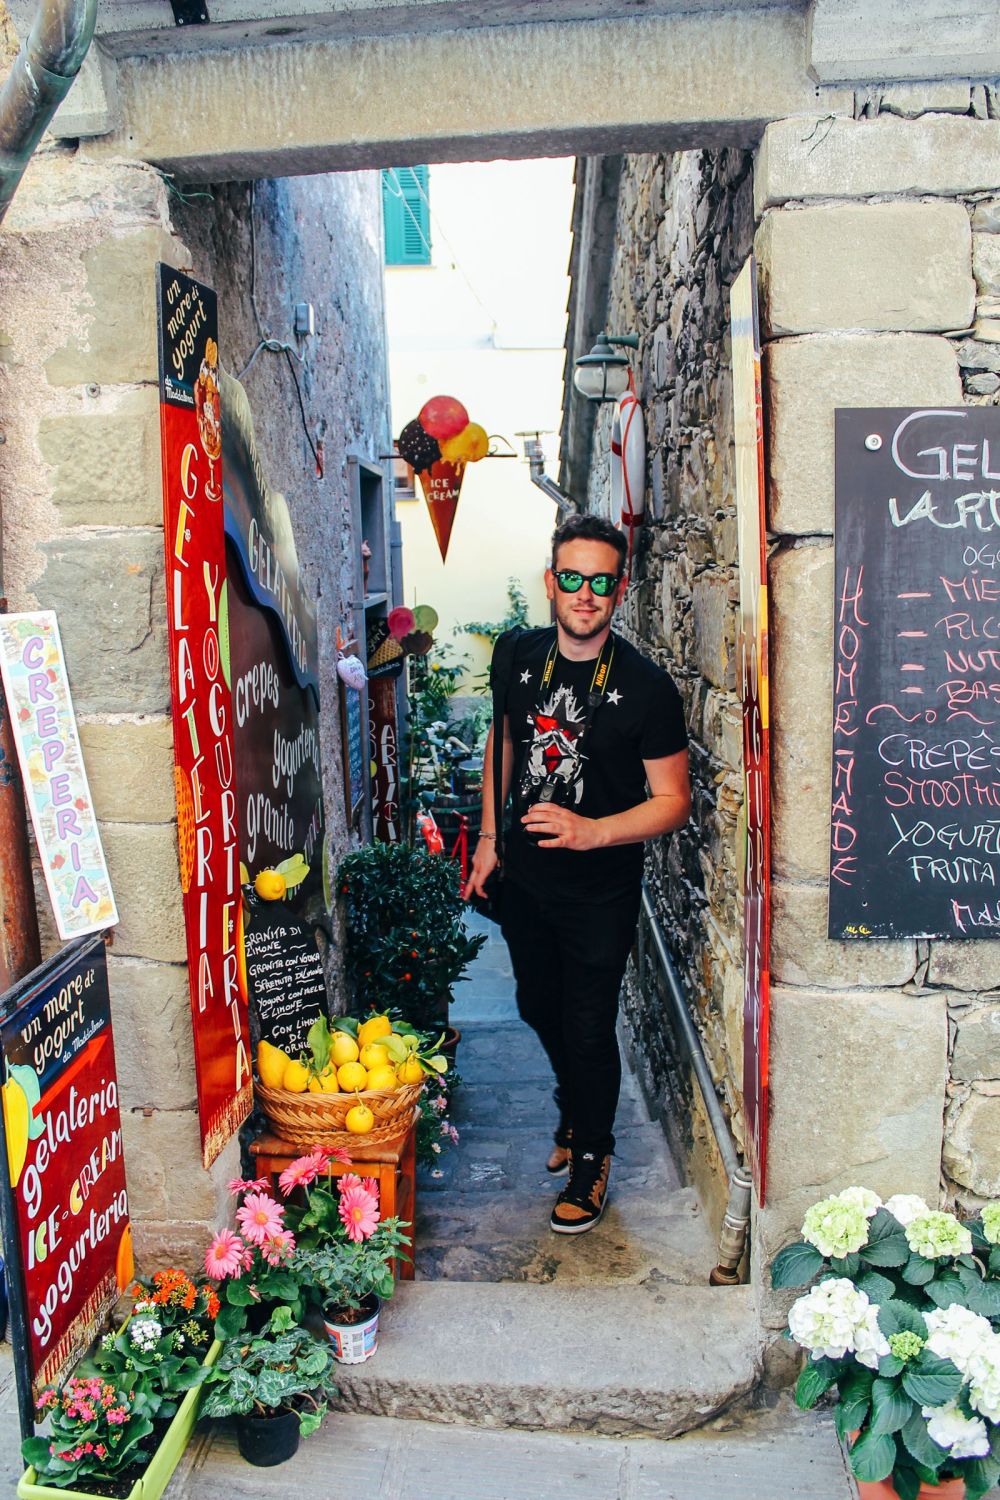 Corniglia in Cinque Terre, Italy - The Photo Diary! [3 of 5] (15)